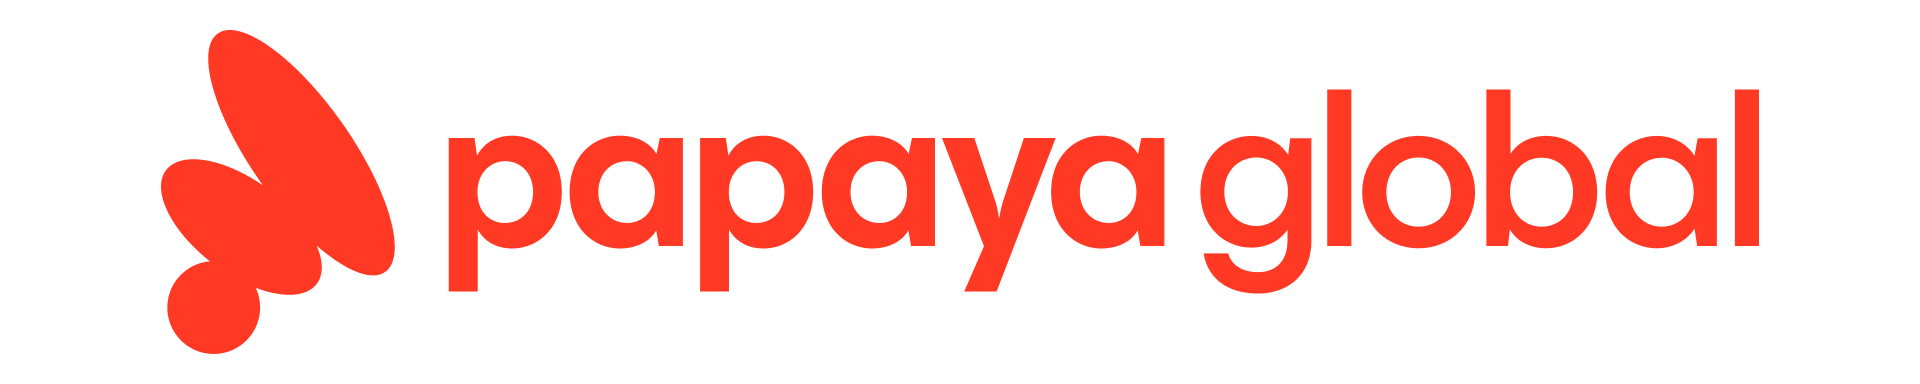 Papayaglobal